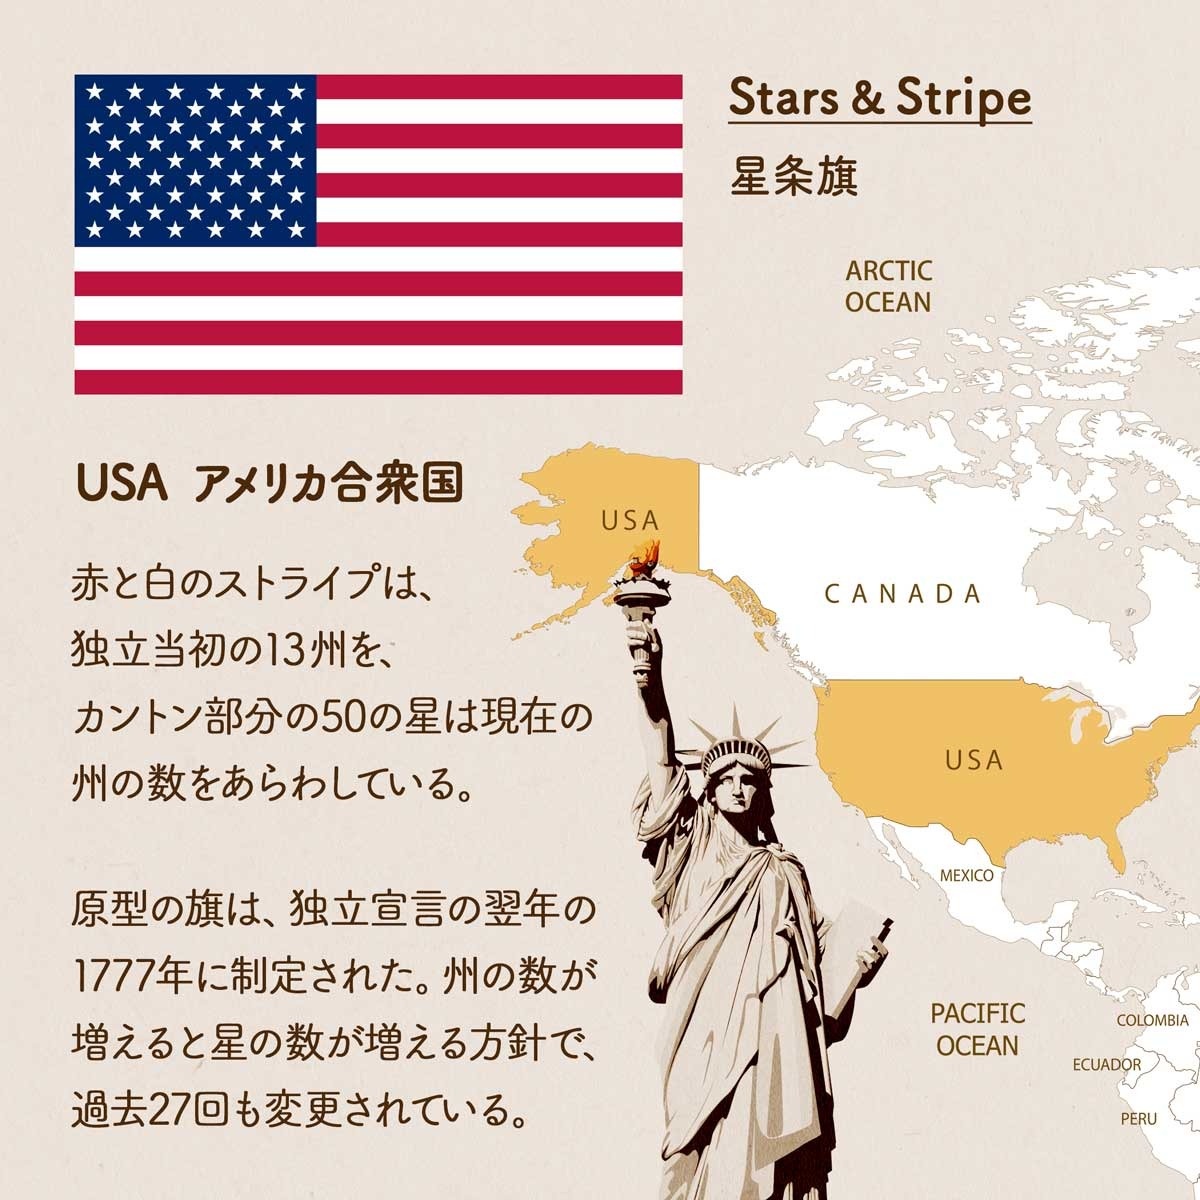 アメリカの国旗、星条旗の歴史 | 国旗のデザインを学ぼう | 世界